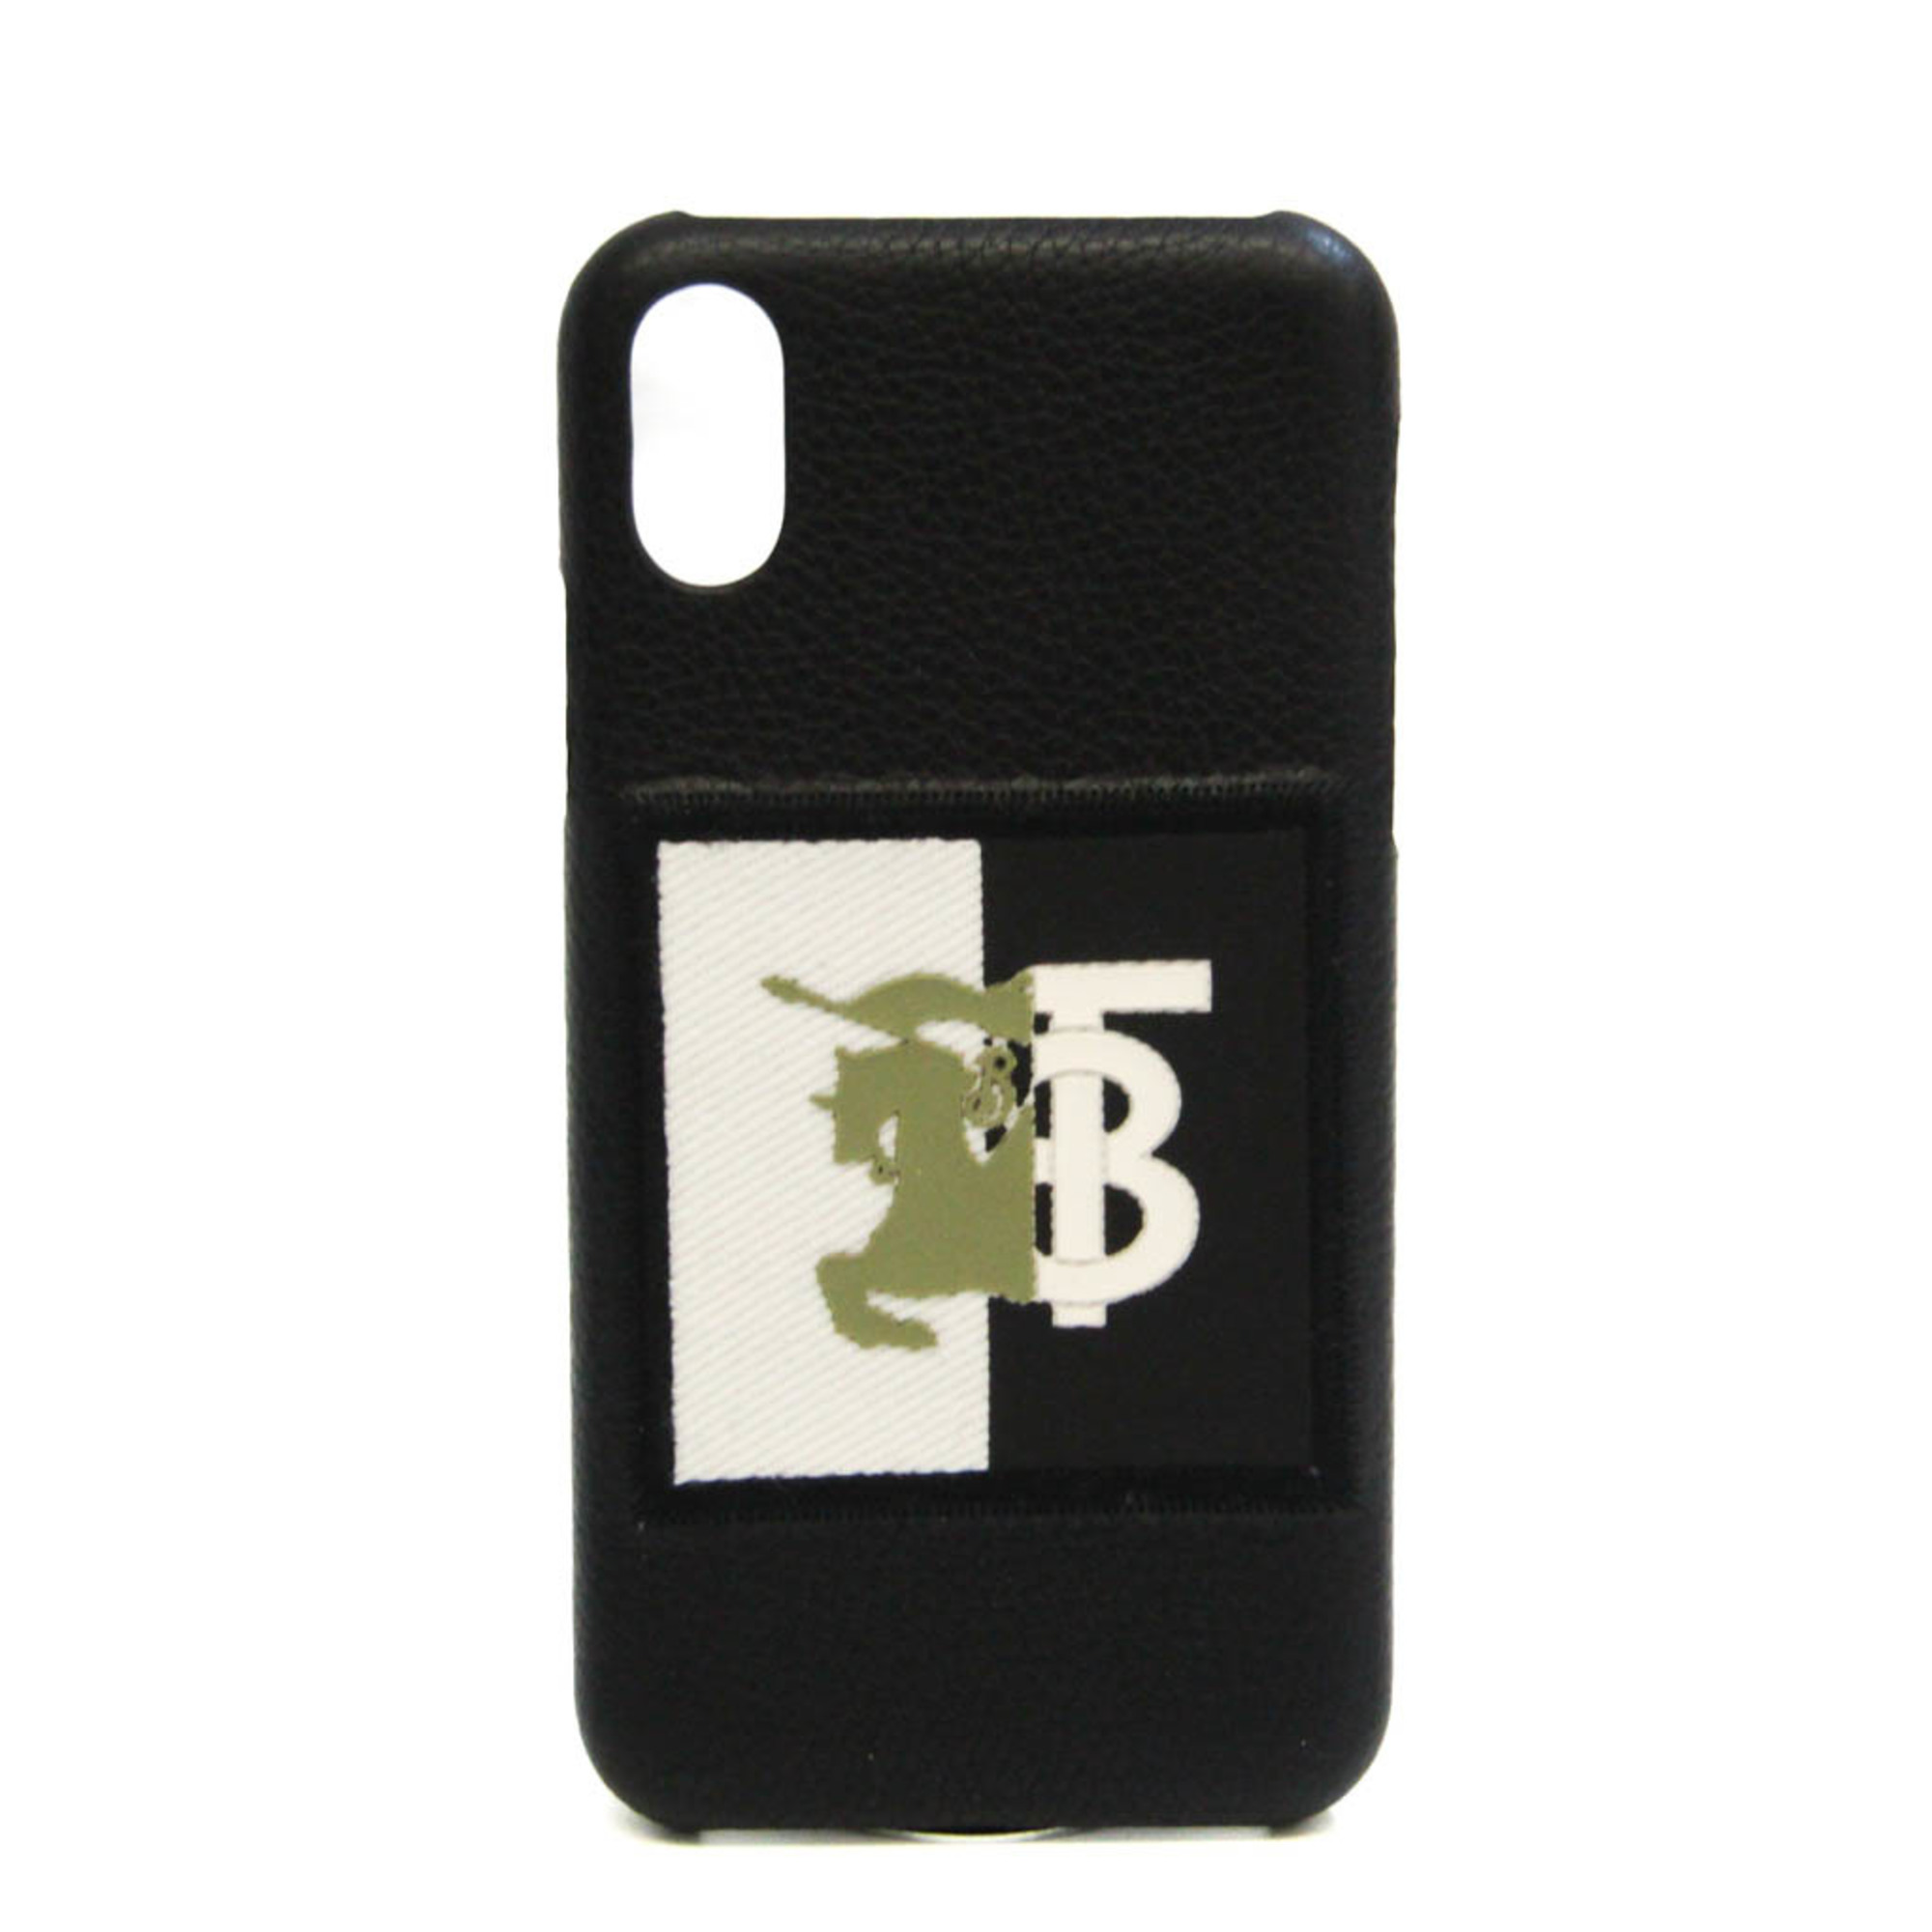 バーバリー(Burberry) ナイトロゴ 8021802 レザー バンパー iPhone X 対応 ブラック